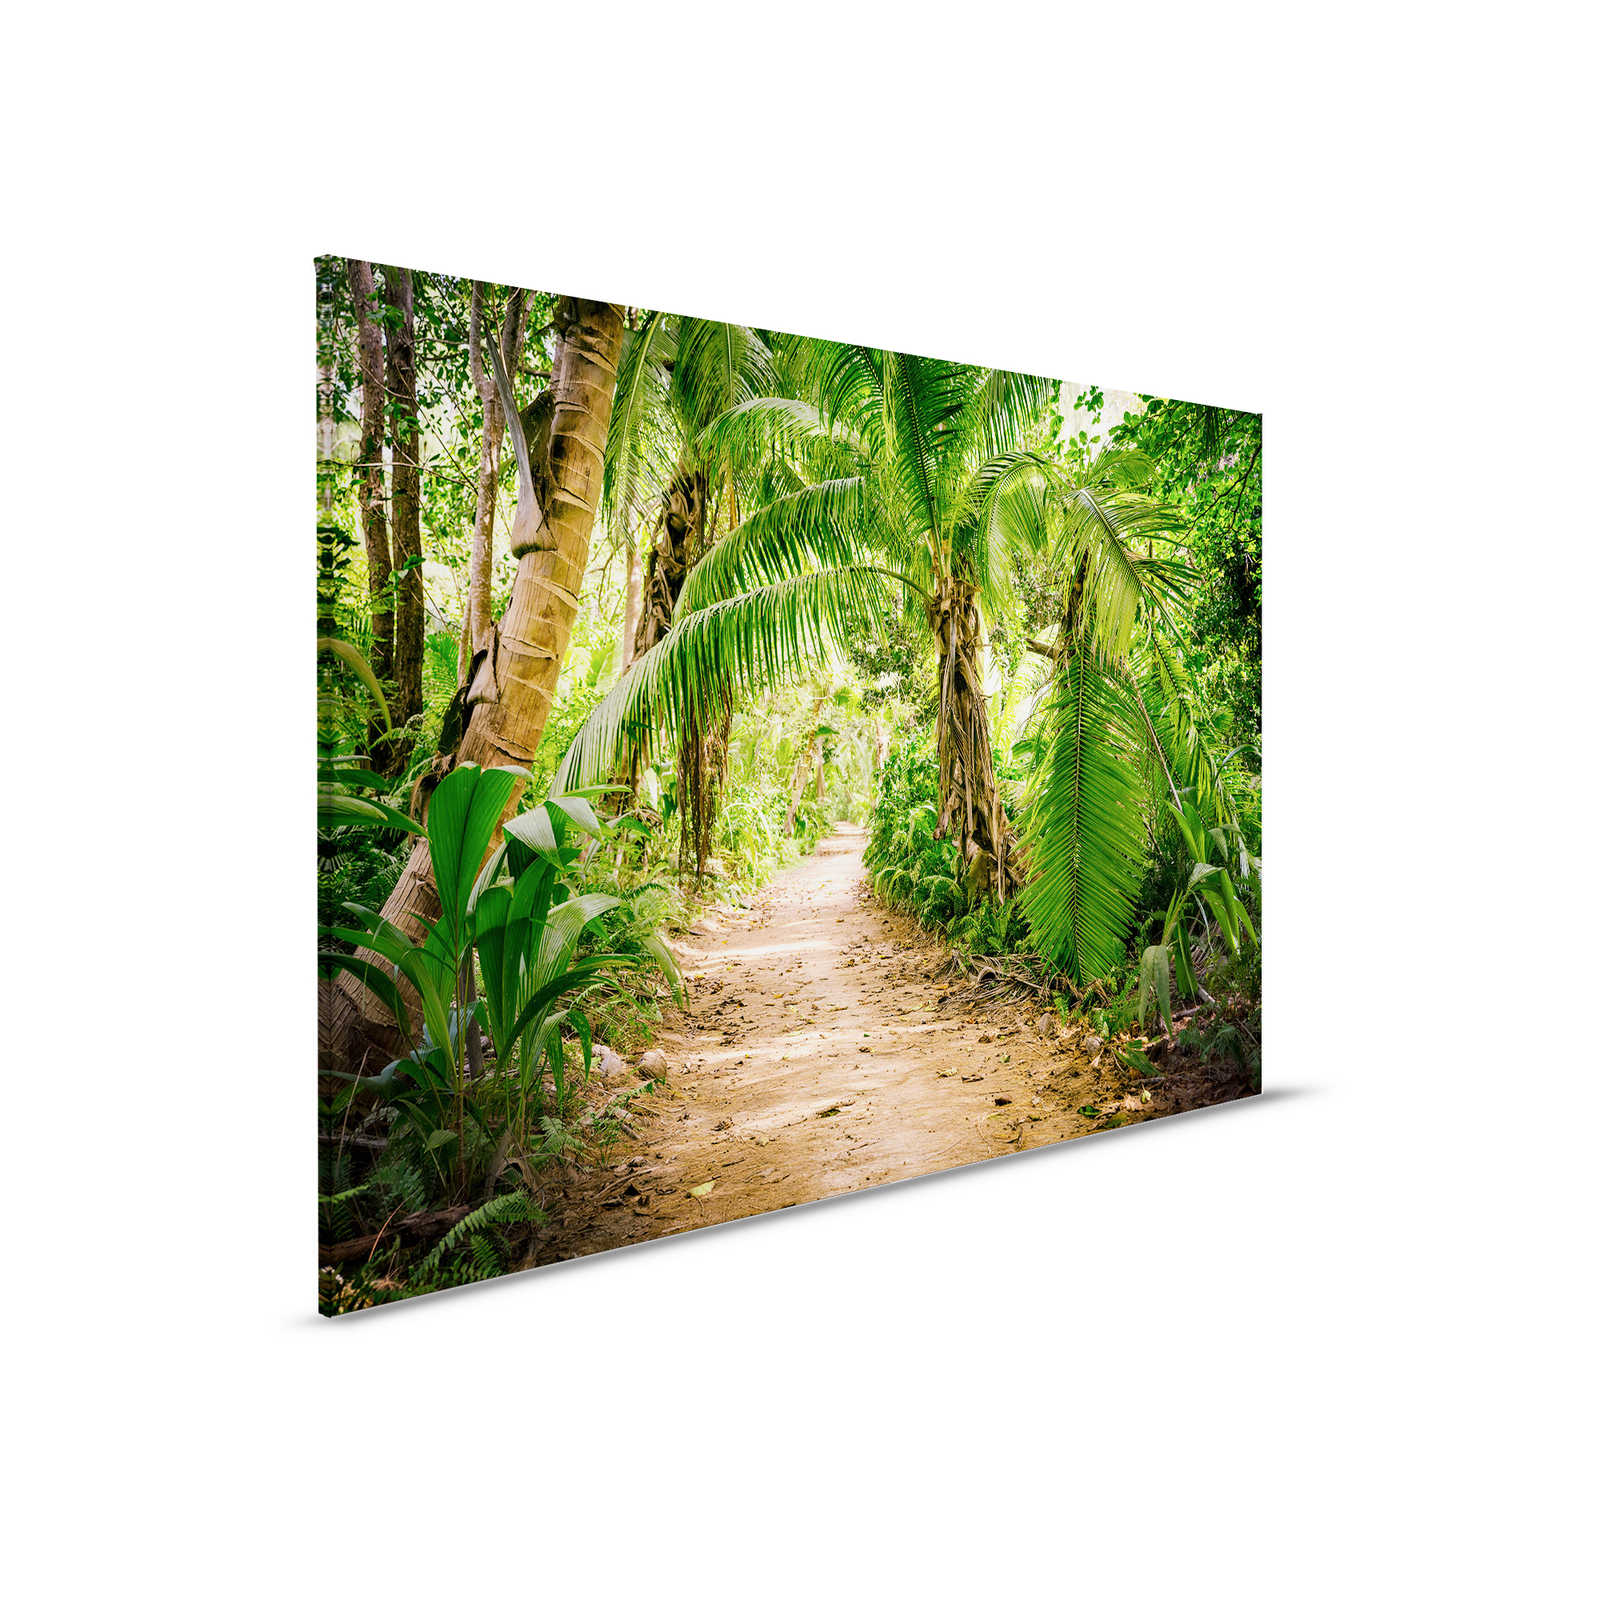         Leinwand mit Palmenweg durch eine tropische Landschaft – 0,90 m x 0,60 m
    